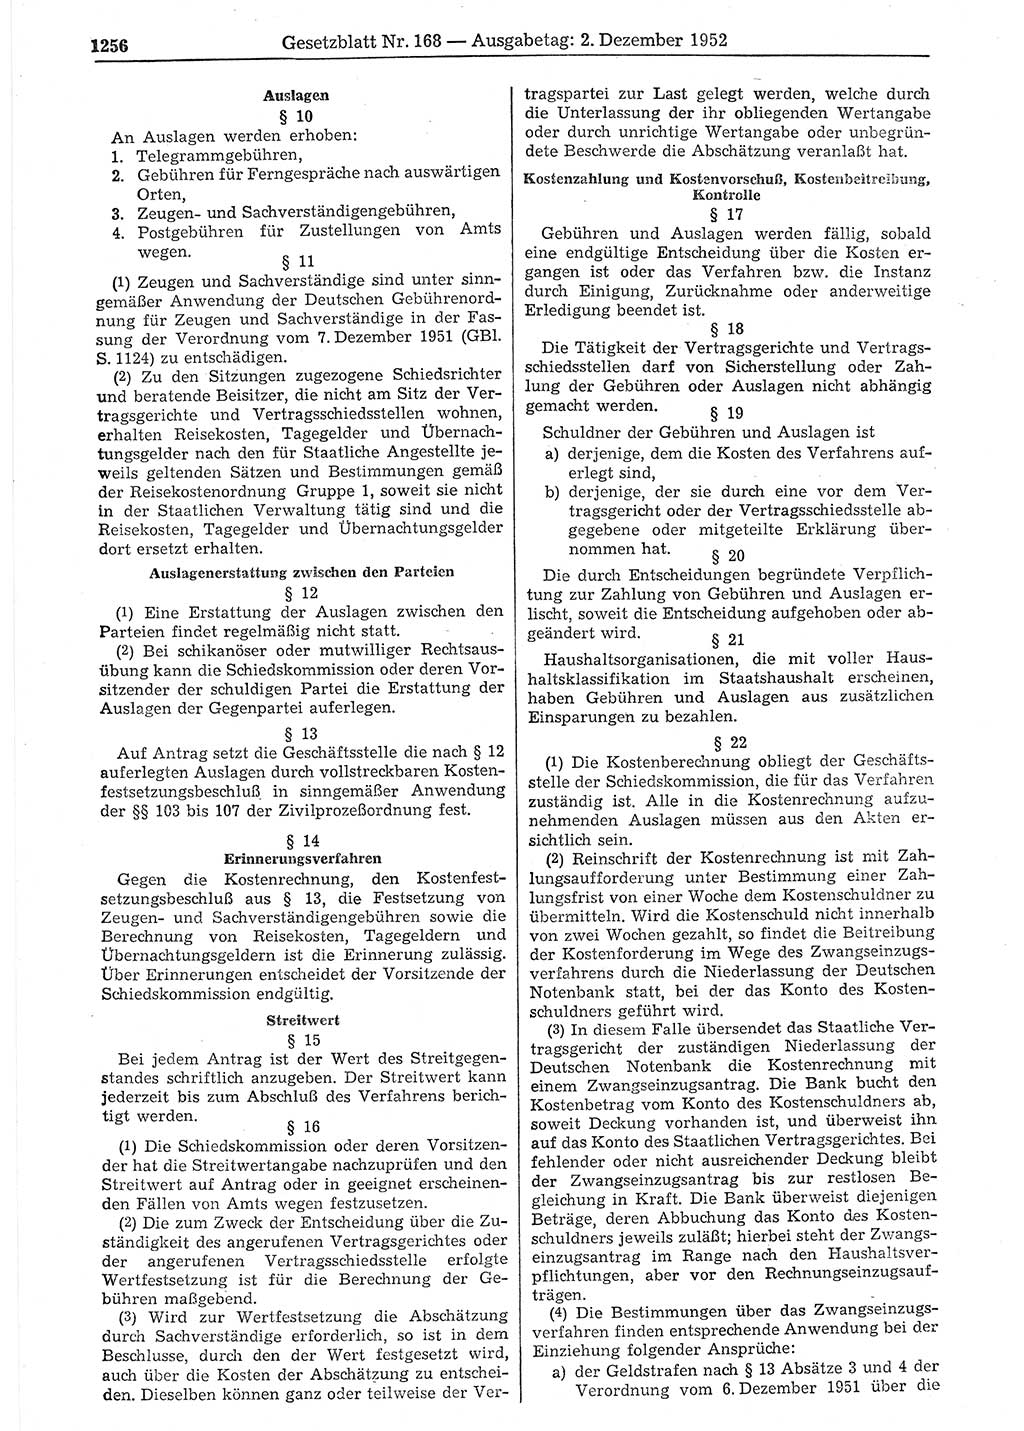 Gesetzblatt (GBl.) der Deutschen Demokratischen Republik (DDR) 1952, Seite 1256 (GBl. DDR 1952, S. 1256)